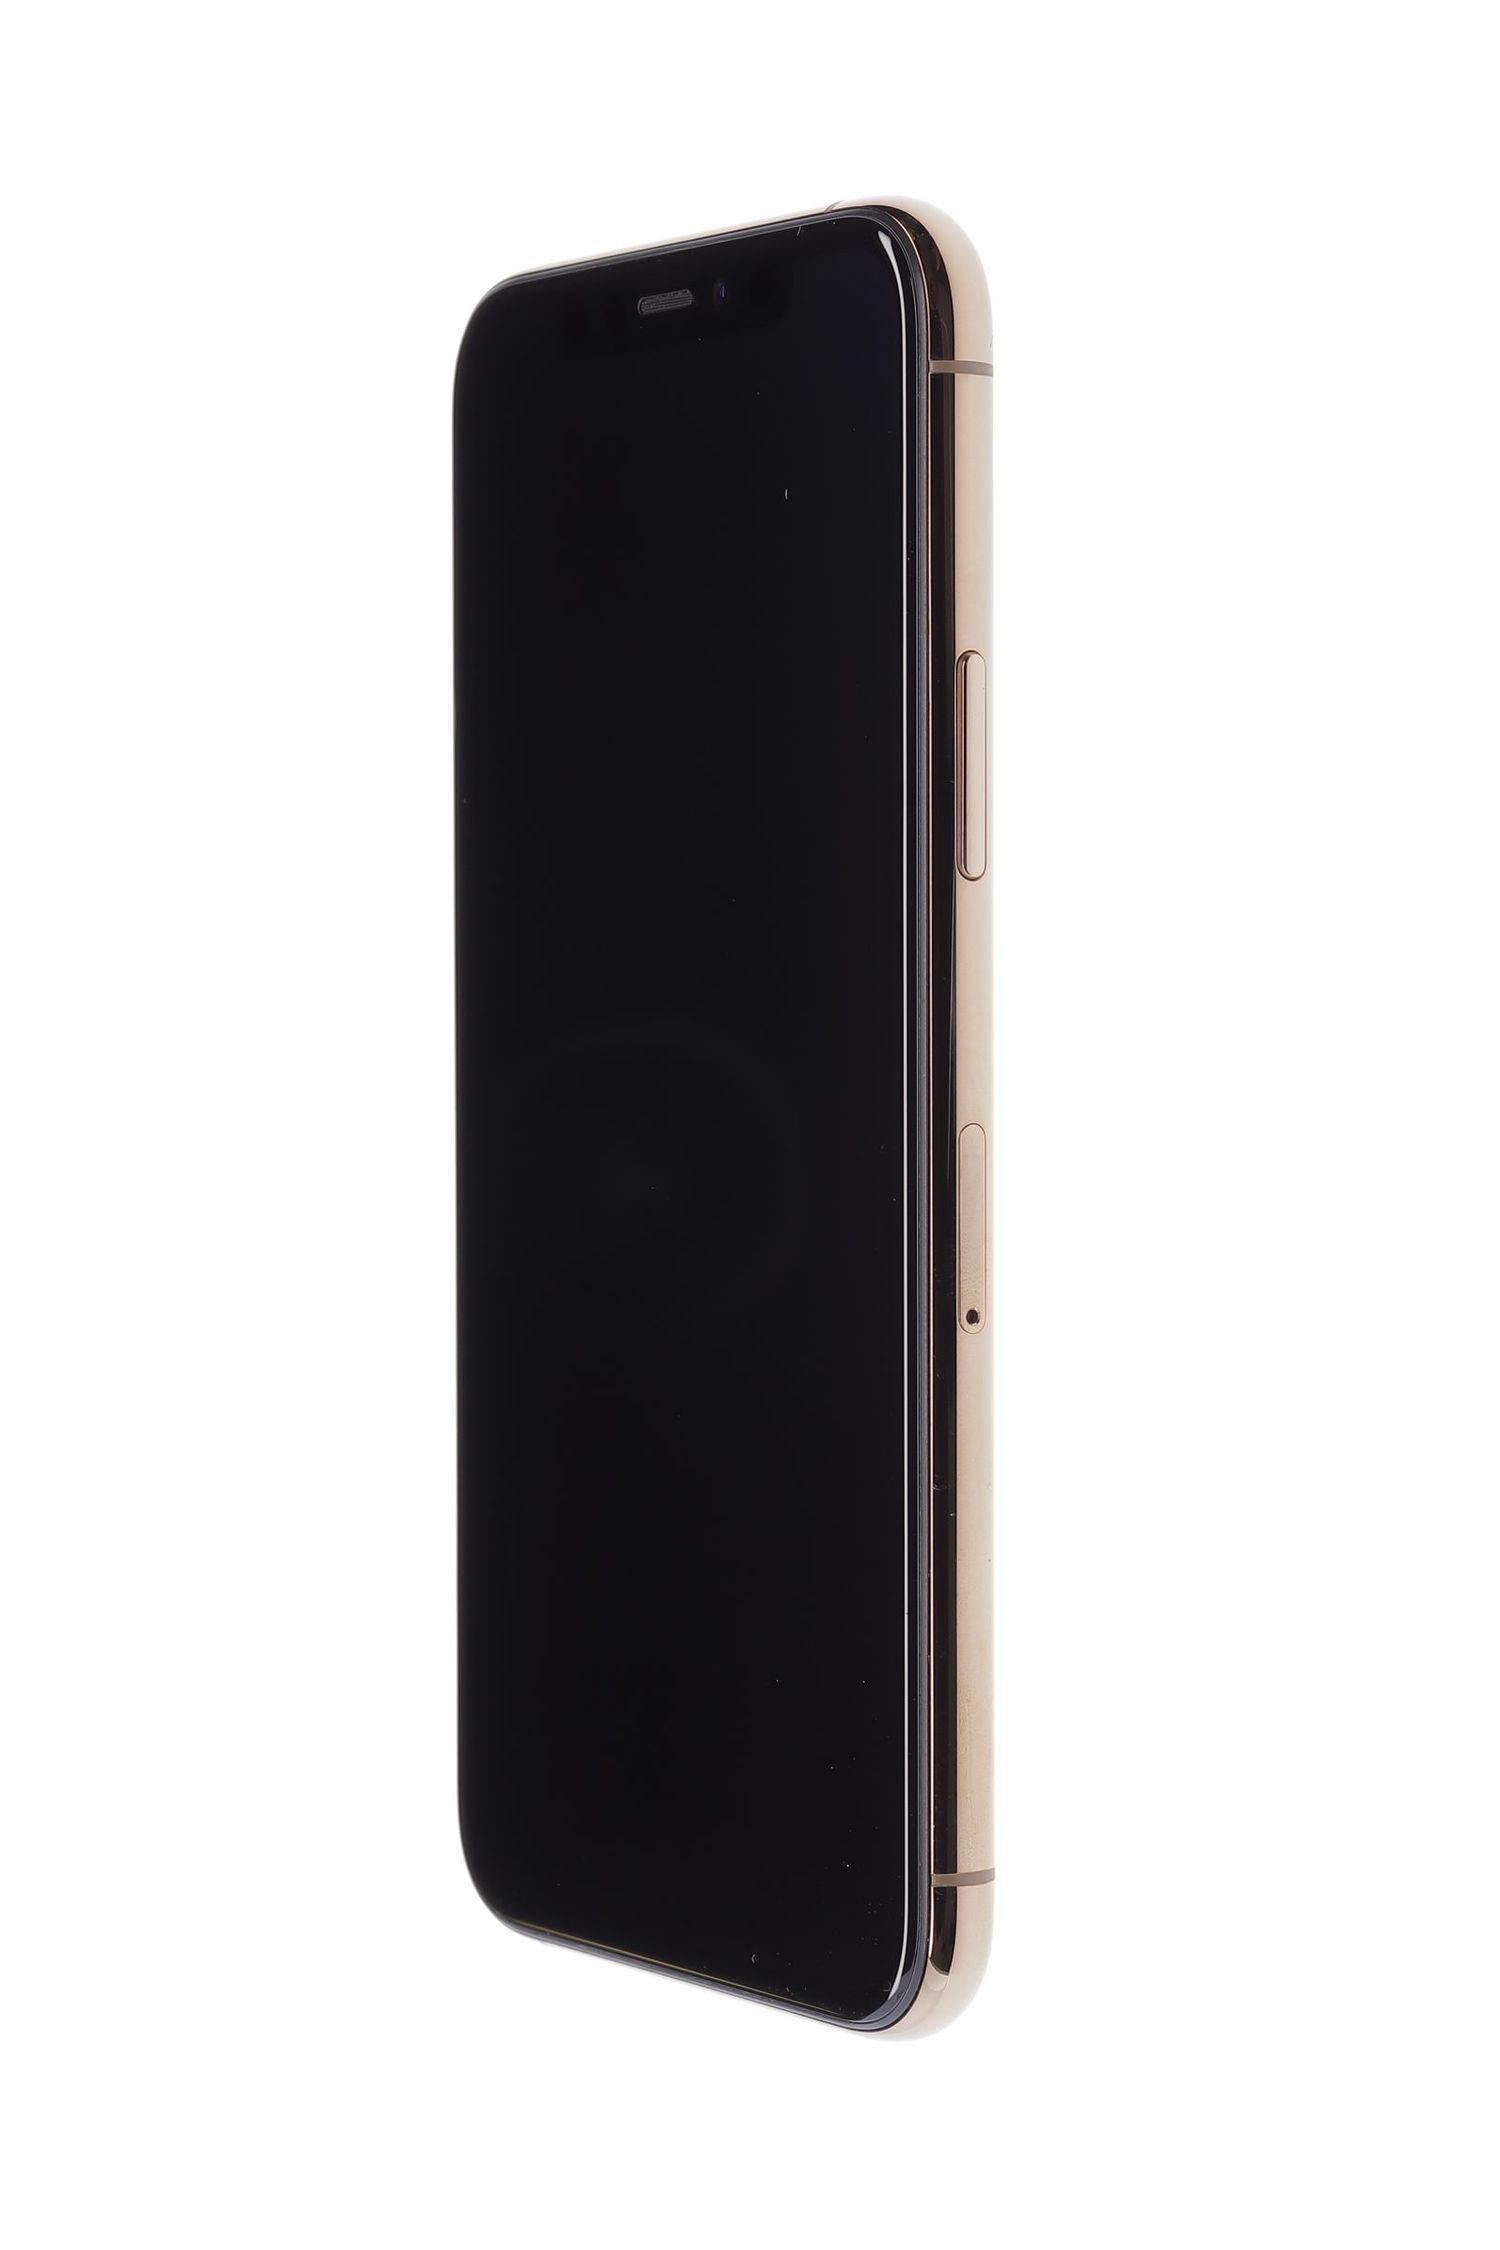 Κινητό τηλέφωνο Apple iPhone 11 Pro, Gold, 256 GB, Ca Nou